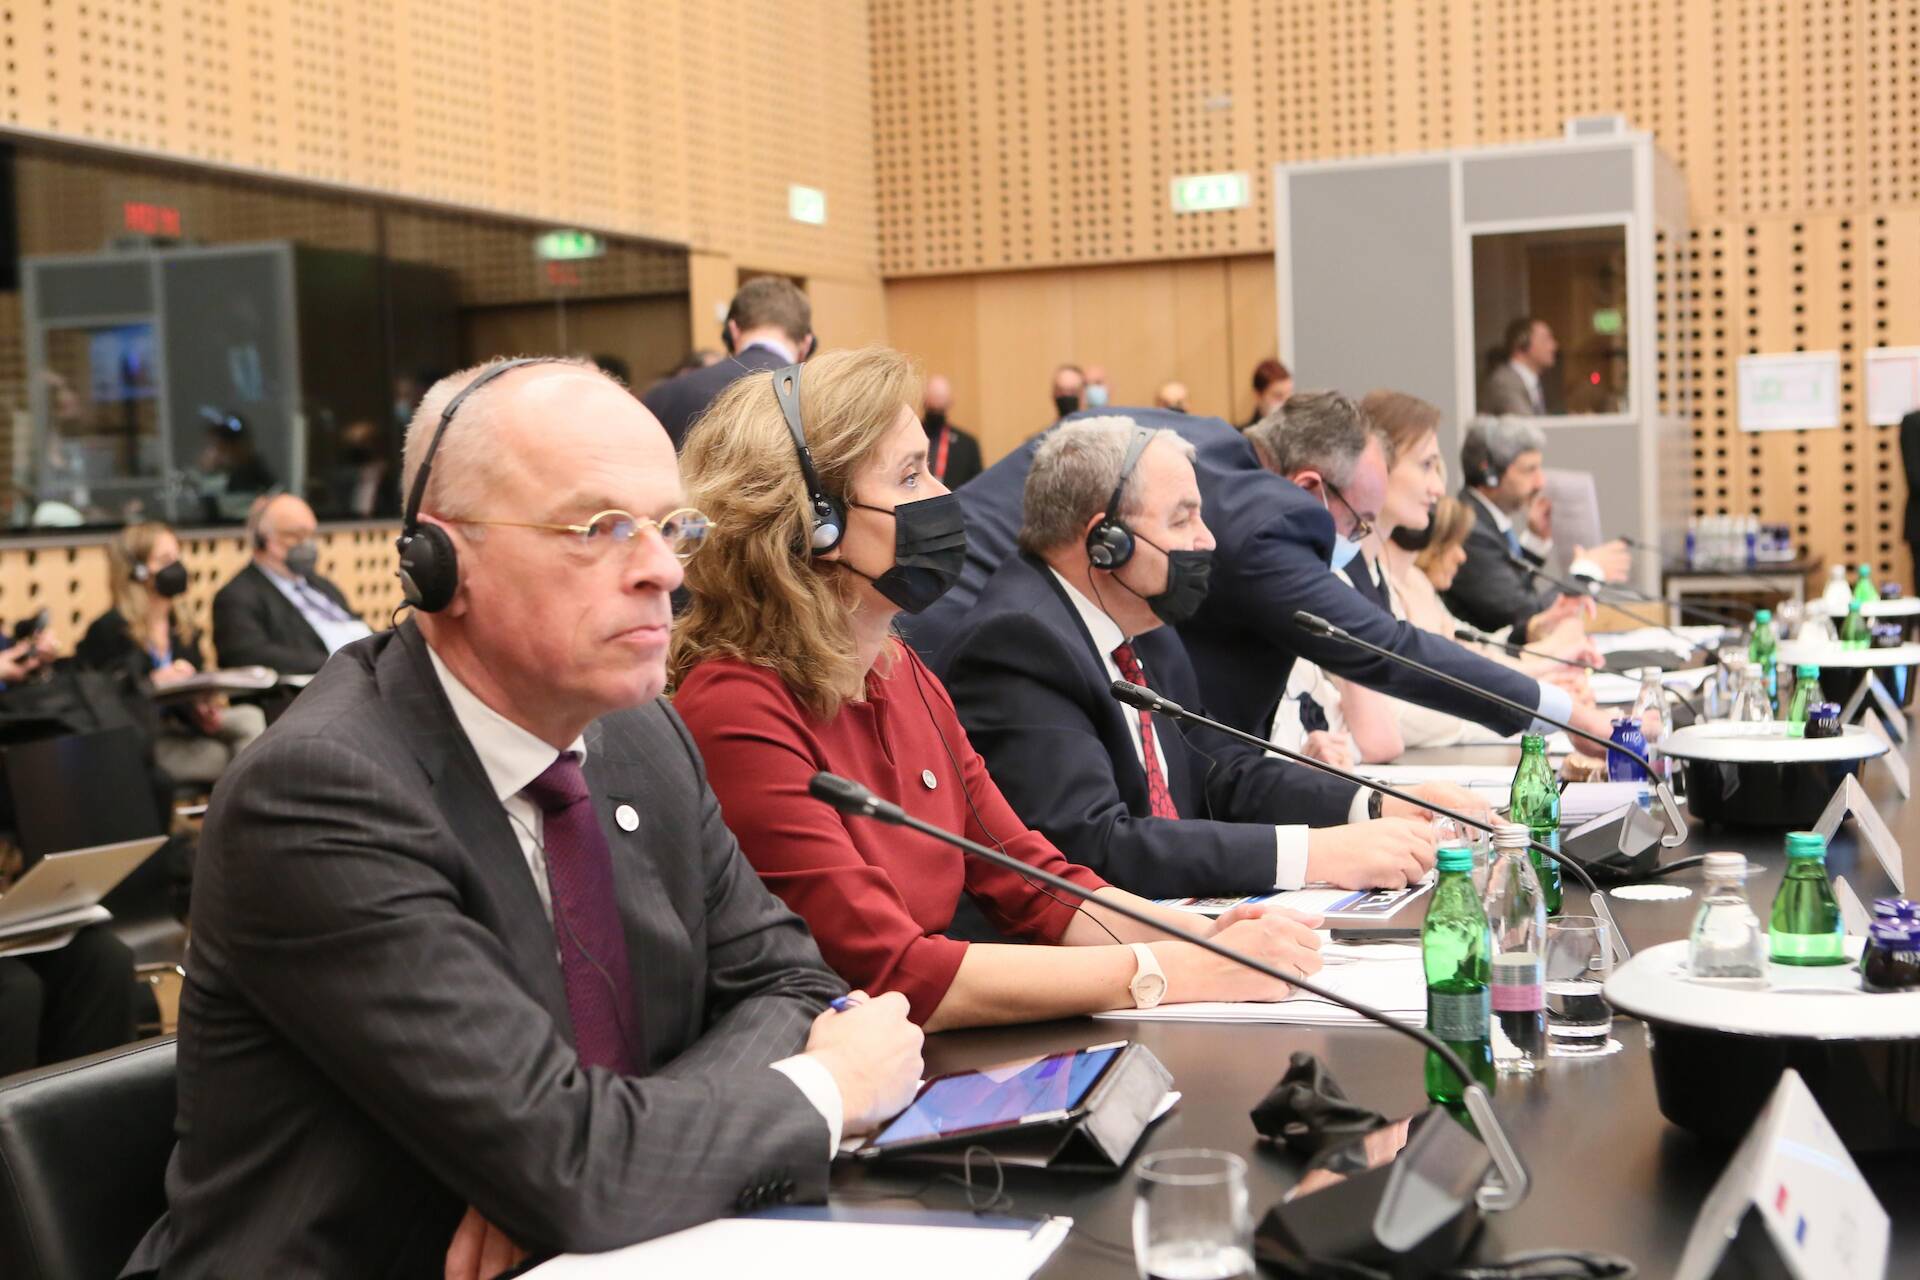 Eerste Kamervoorzitter Jan Anthonie Bruijn nam samen met zijn collega Vera Bergkamp van de Tweede Kamer deel aan de jaarlijkse conferentie van Voorzitters van EU-parlementen.